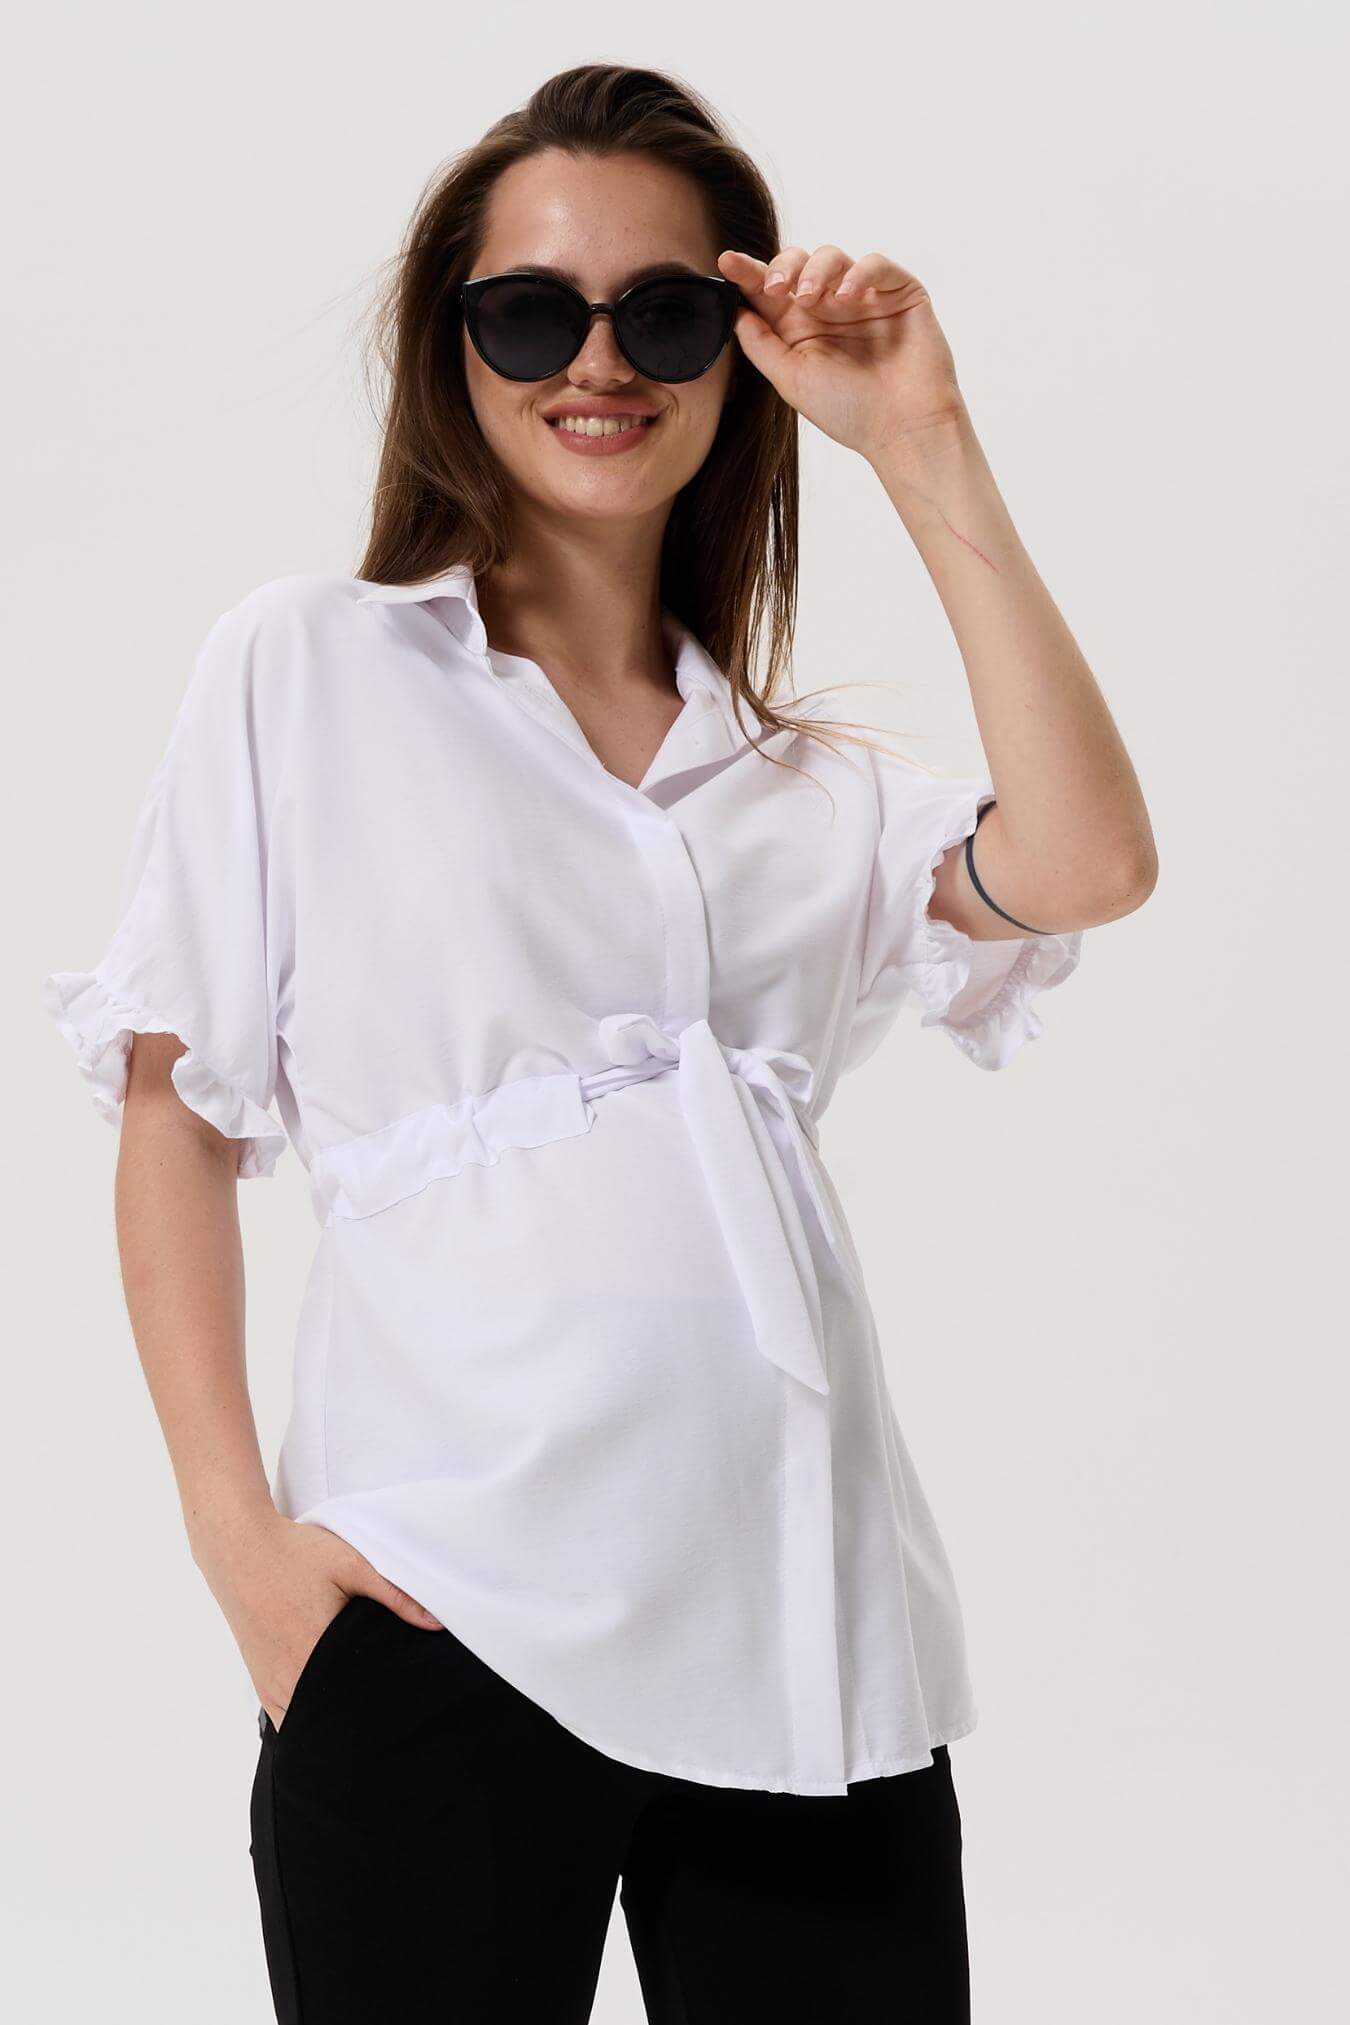 Блузка для беременных женщин летняя офисная белая женская блуза рубашка для будущих мам / Happy Moms